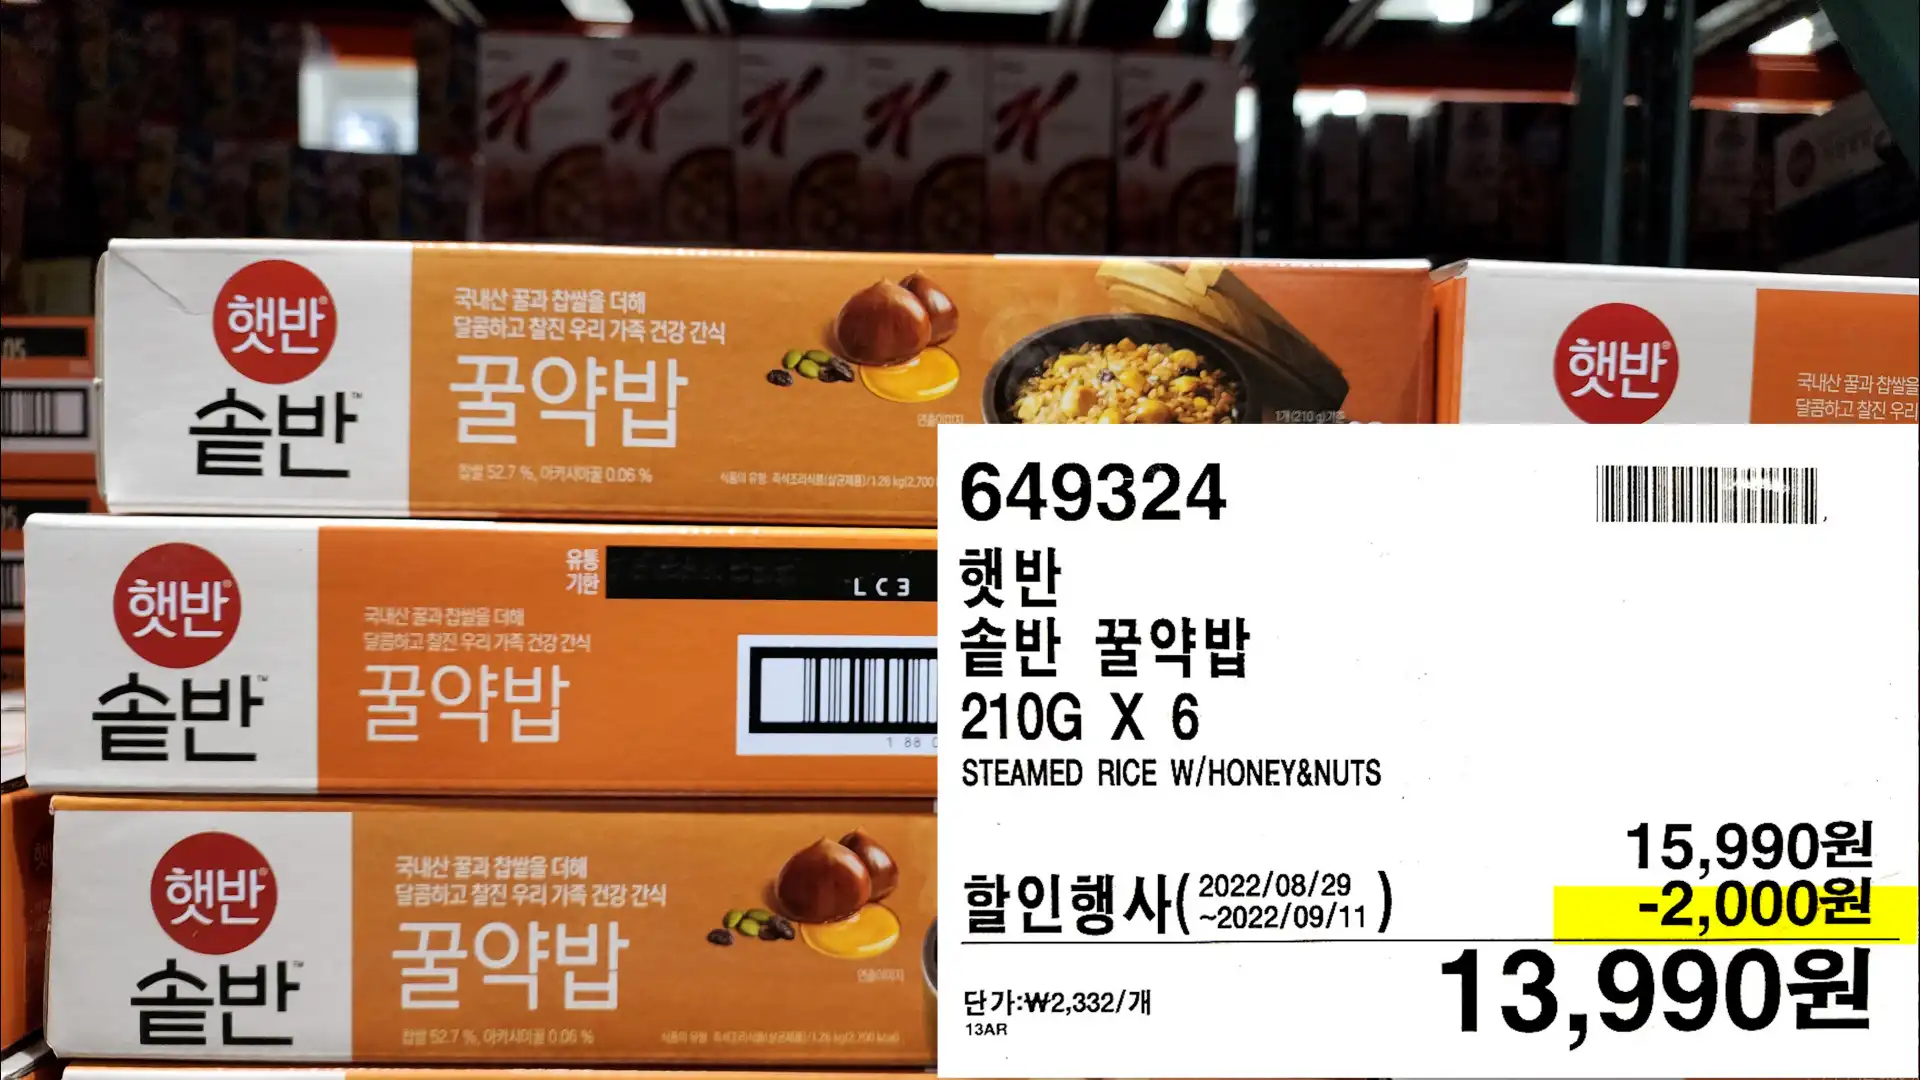 햇반
솥반 꿀약밥
210G X 6
STEAMED RICE W/HONEY&NUTS
13,990원